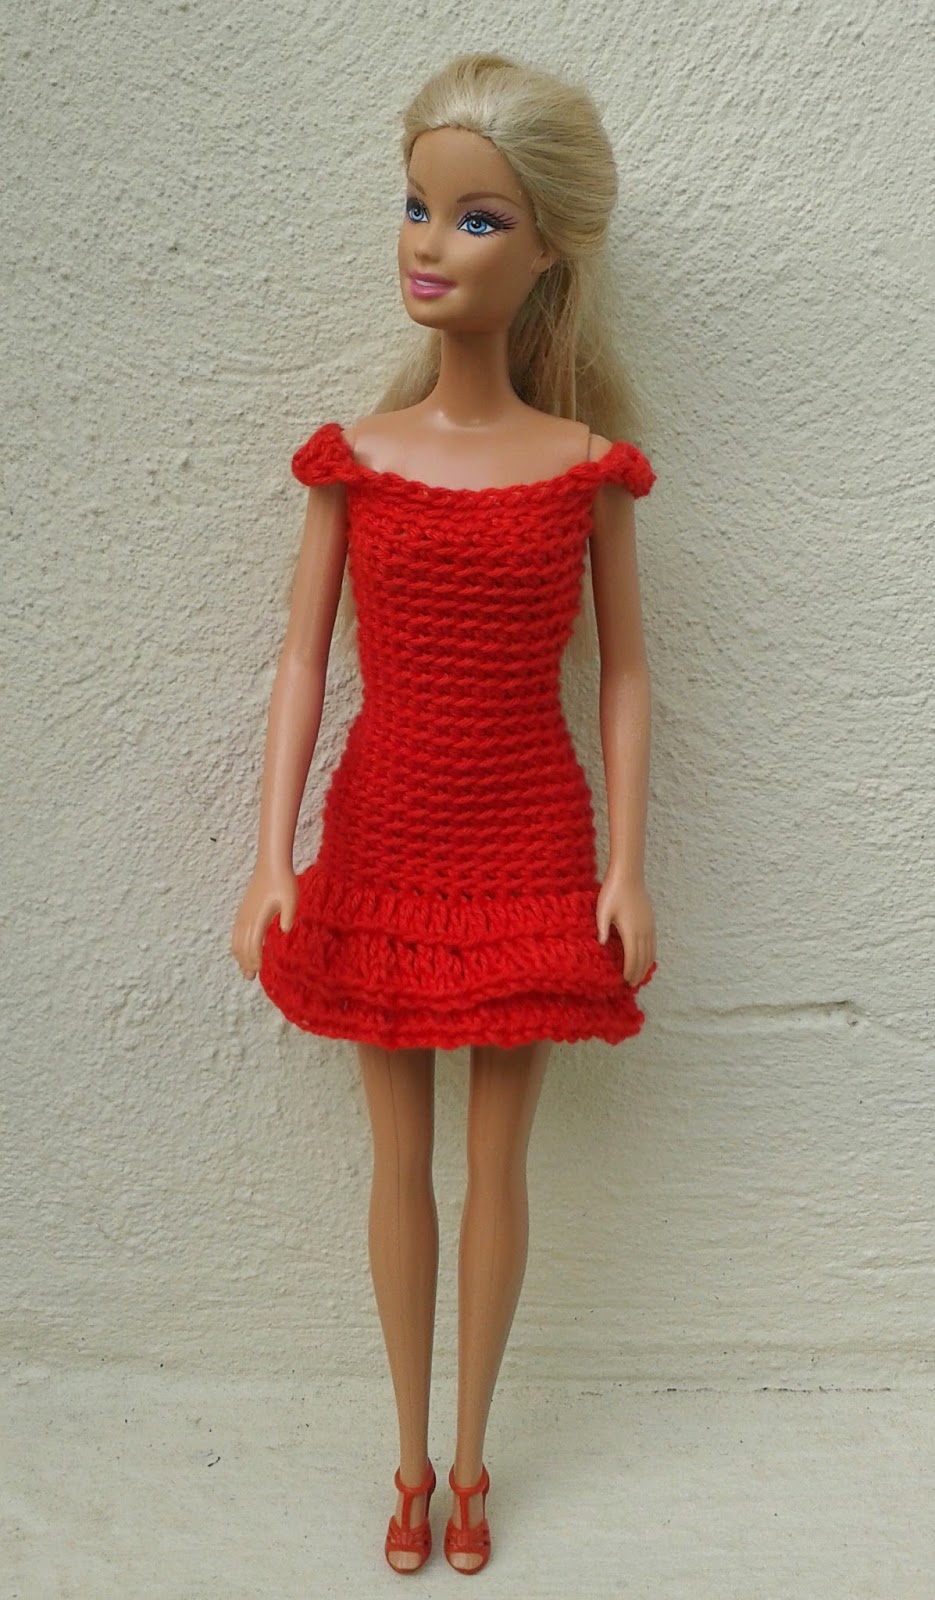 Linmary strickt Barbie in roten Häkelkleidern